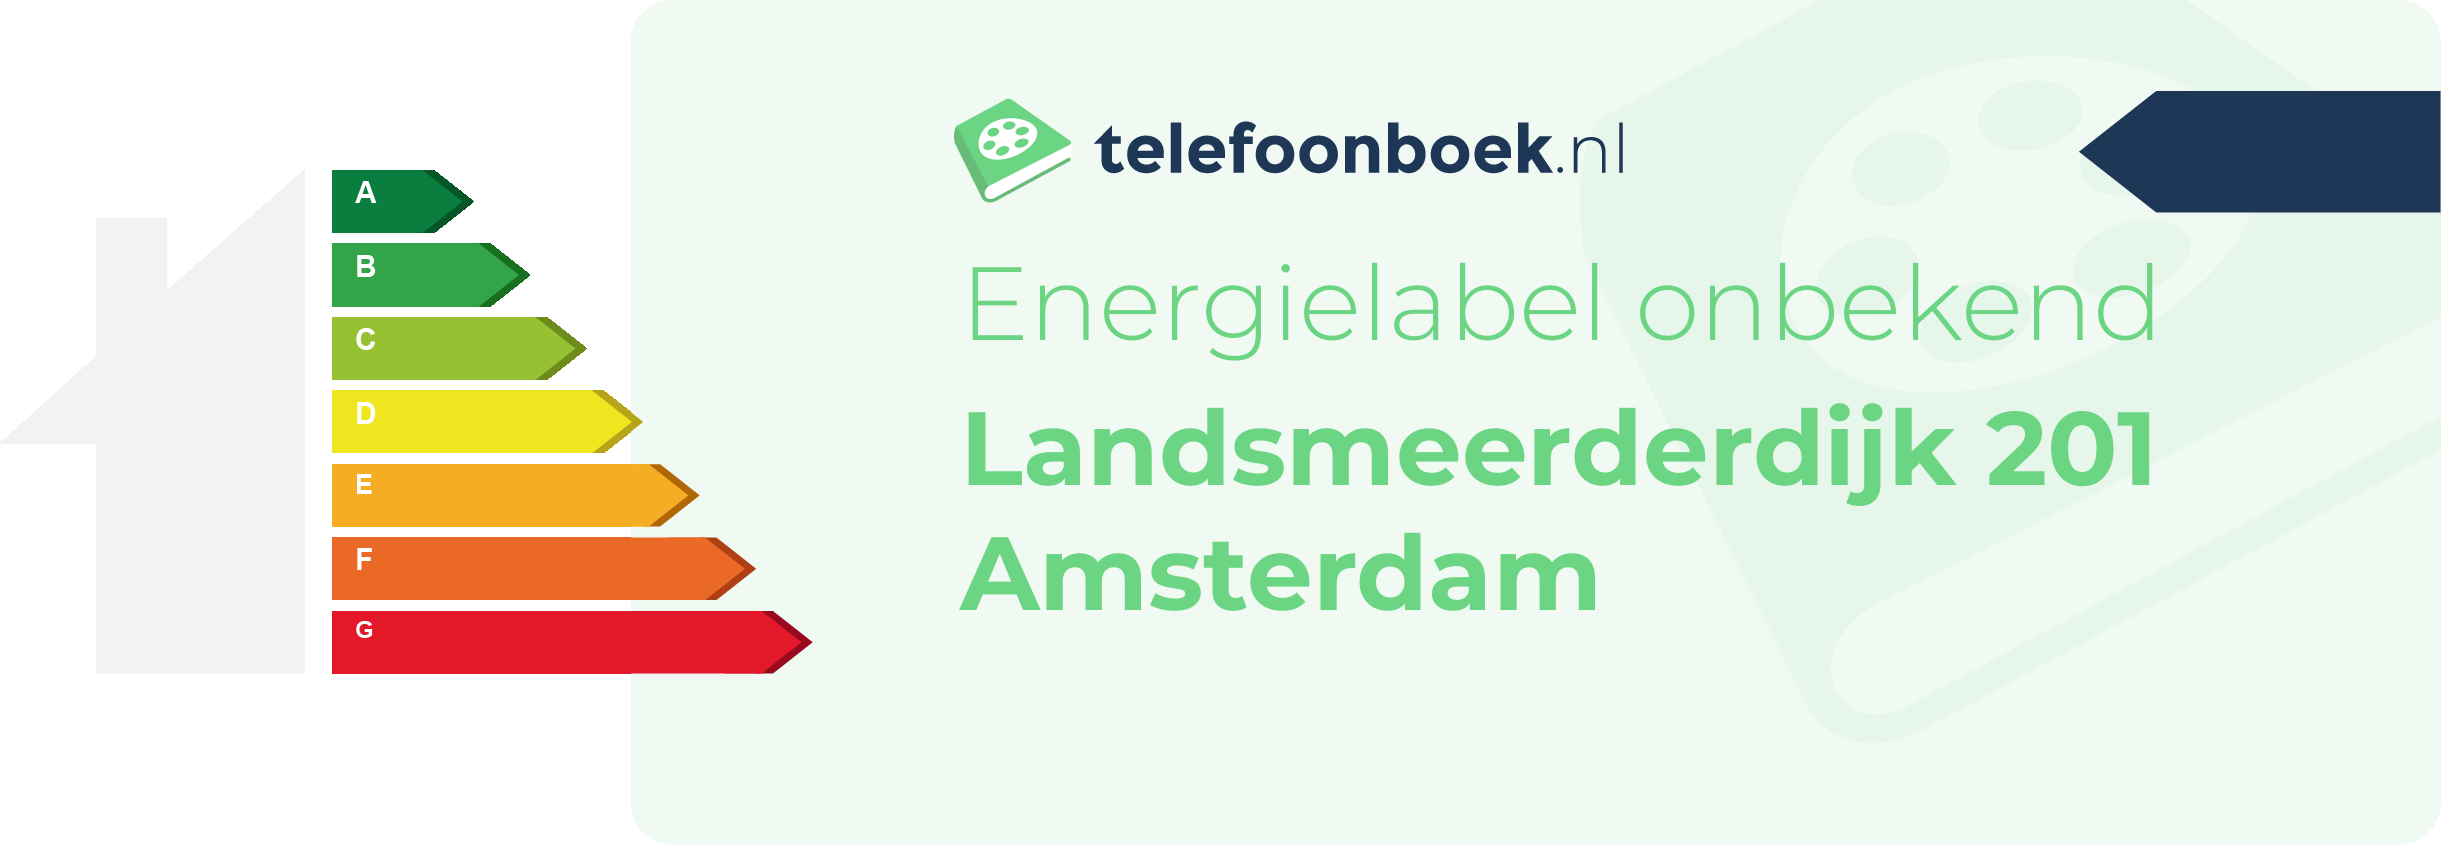 Energielabel Landsmeerderdijk 201 Amsterdam